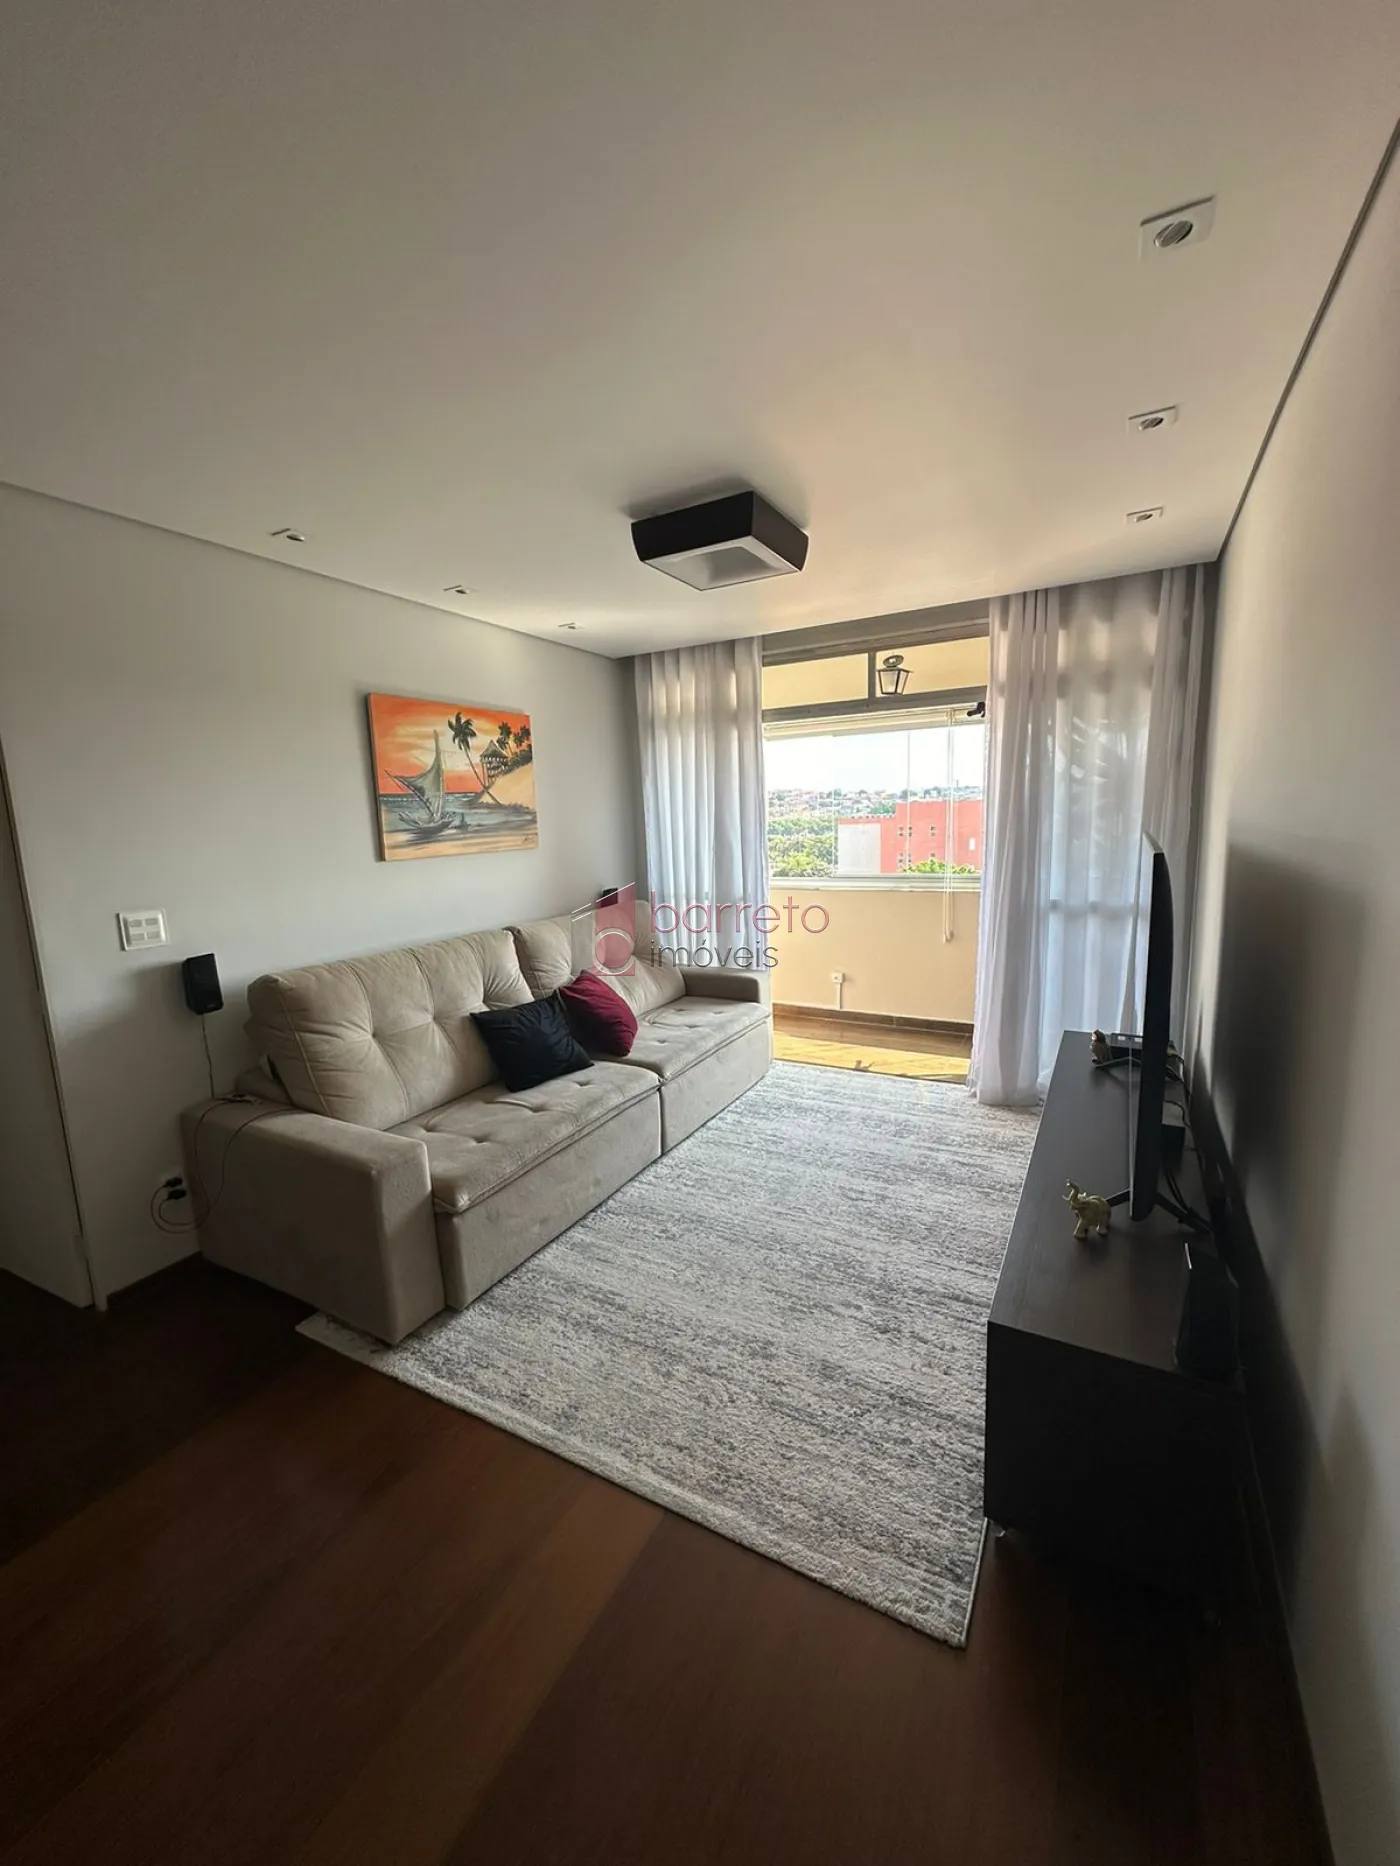 Comprar Apartamento / Padrão em Jundiaí R$ 760.000,00 - Foto 2